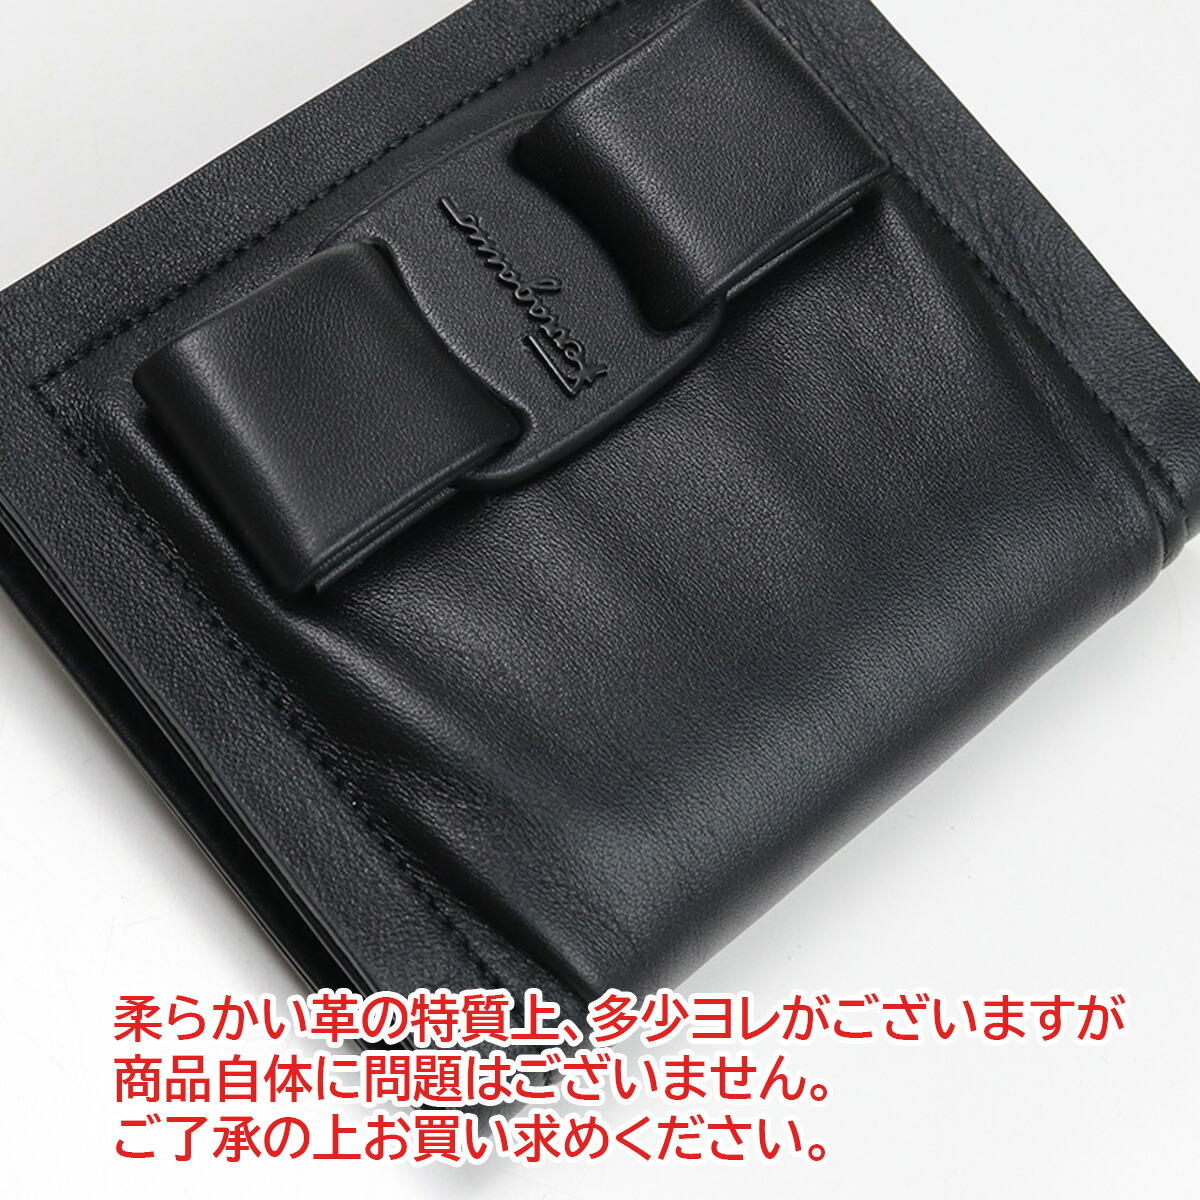 ブランドプラス / フェラガモ つ折り財布 ブランド財布